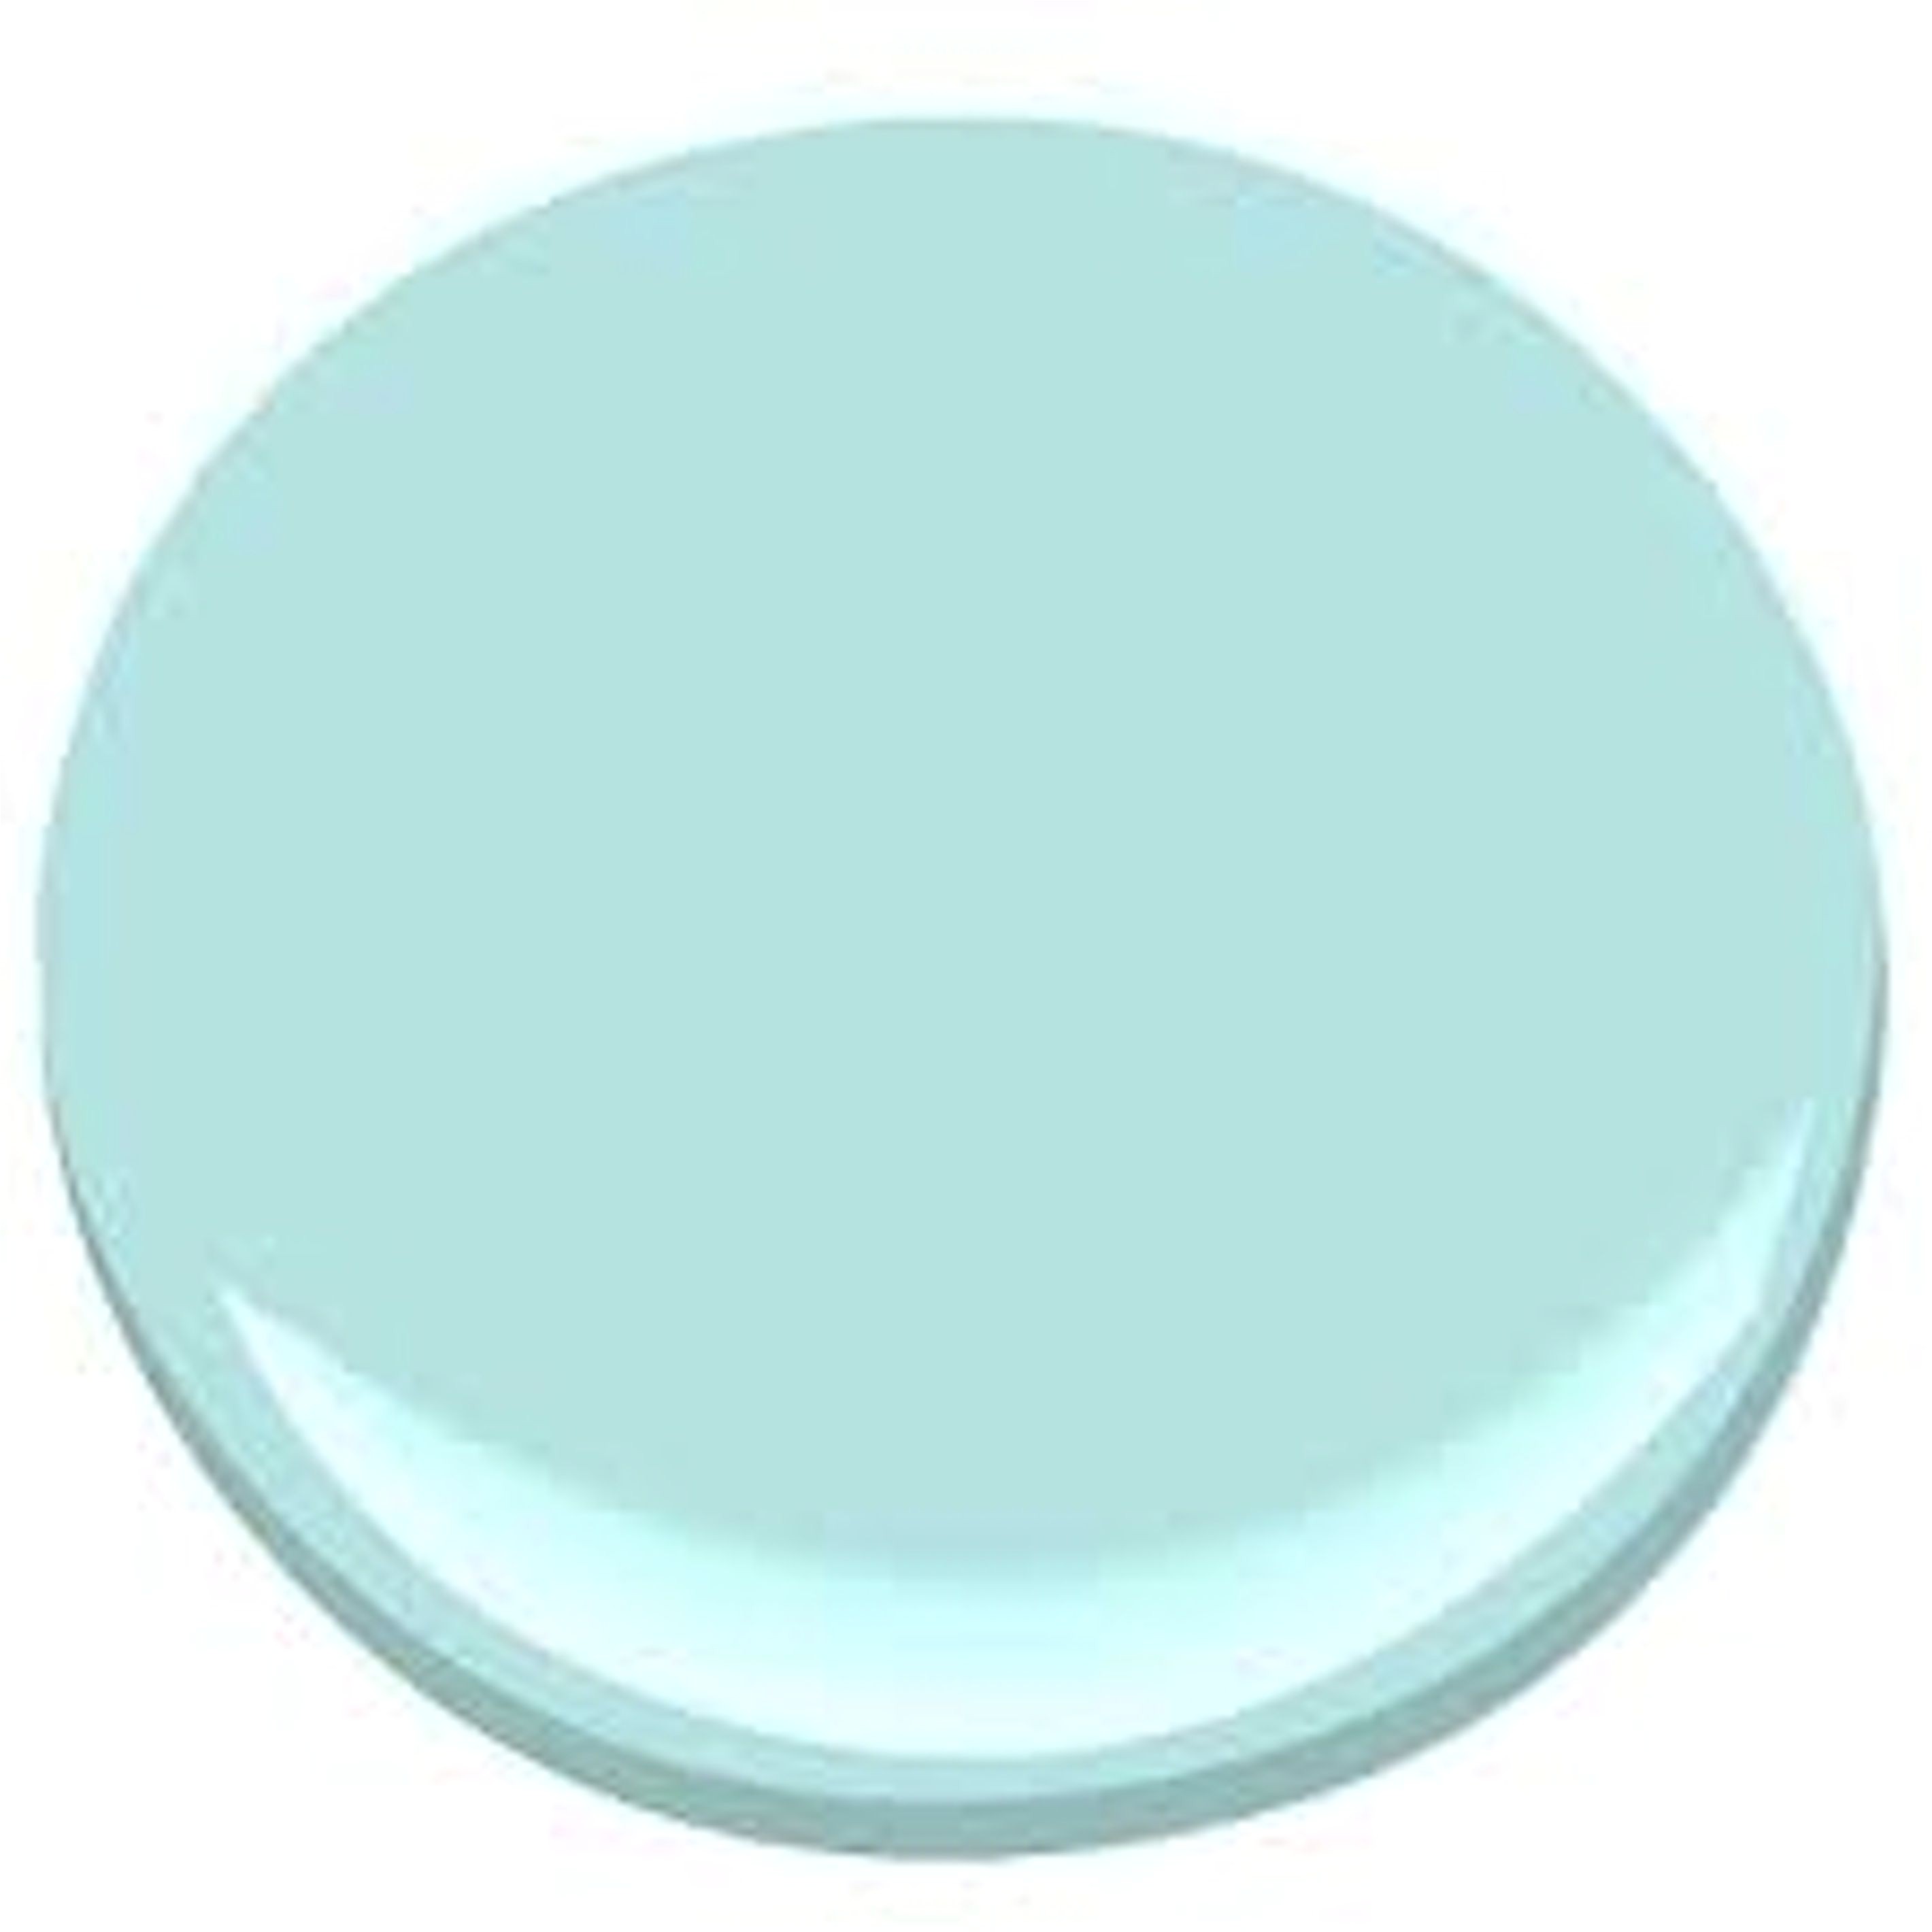 Benjamin Moore Jamaican Aqua top 10 Aqua Paint Colors for Your Home